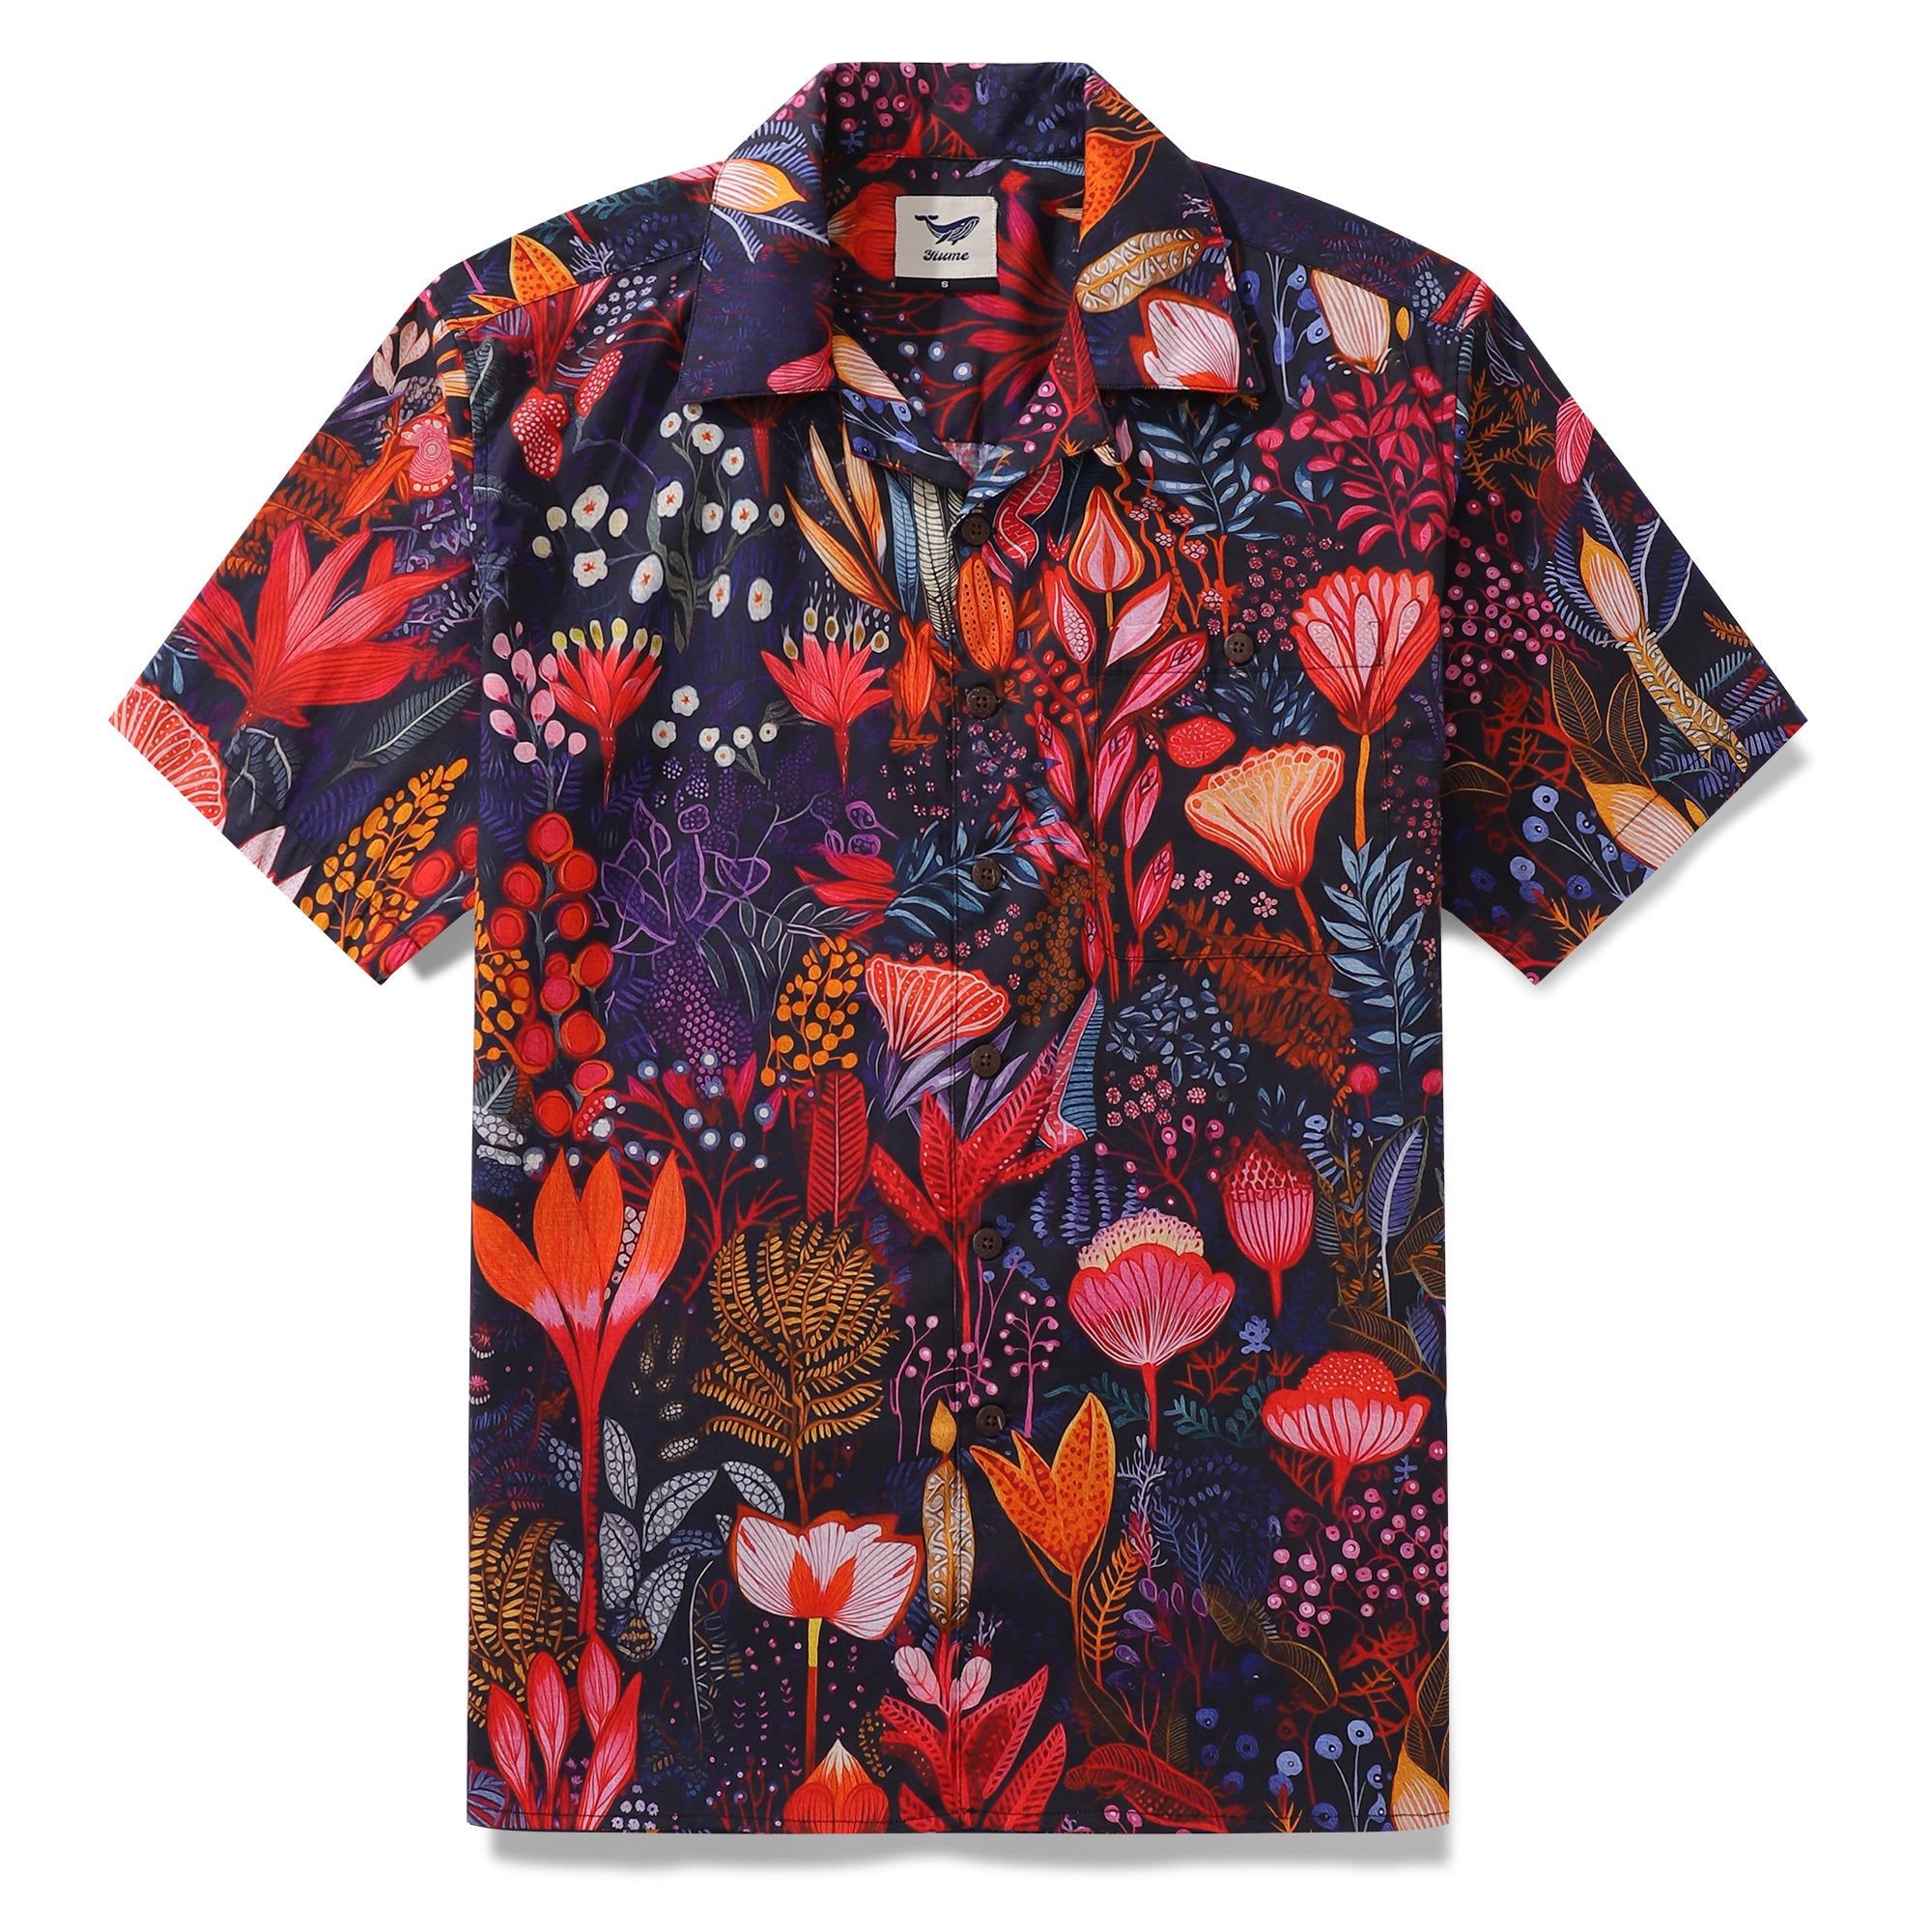 Men's Tropical Shirt 100% Cotton Short Sleeve Shirt Dream Scarlet Garden Shirt Camp Collar